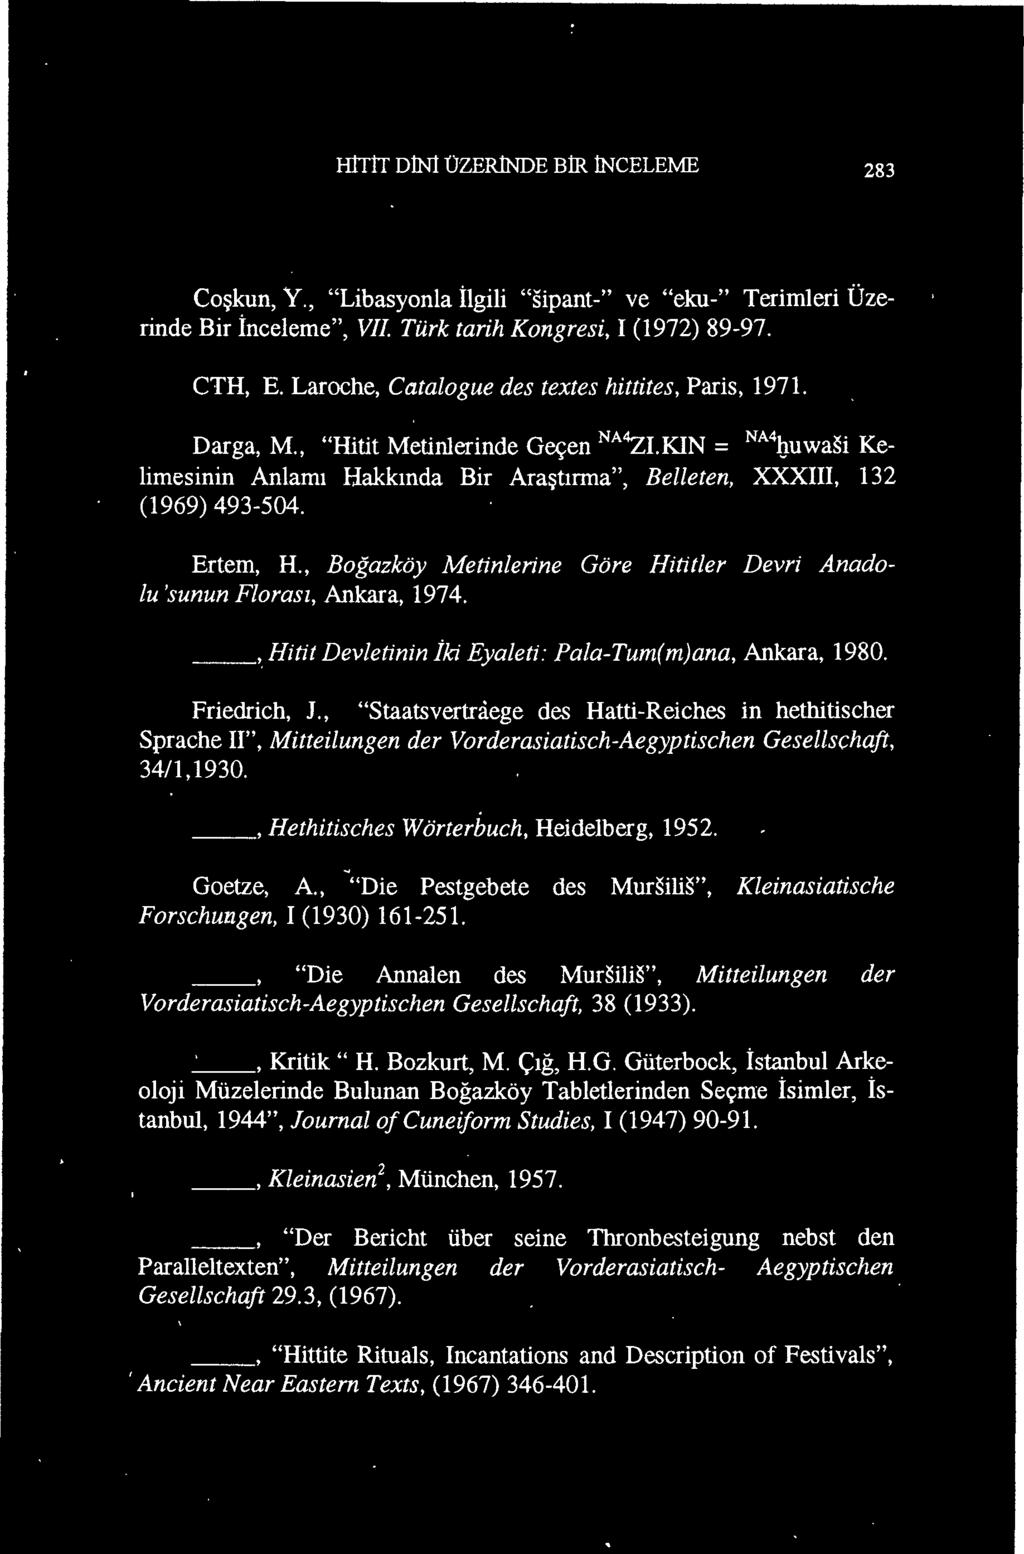 , "Die Pestgebete des Mursilis", Kleinasiatische Forschungen, 1(1930) 161-251., "Die Annalen des Mursilis", Mitteilungen der Vorderasiatisch-Aegyptischen Gesellschaft, 38 (1933). _', Kritik" H.